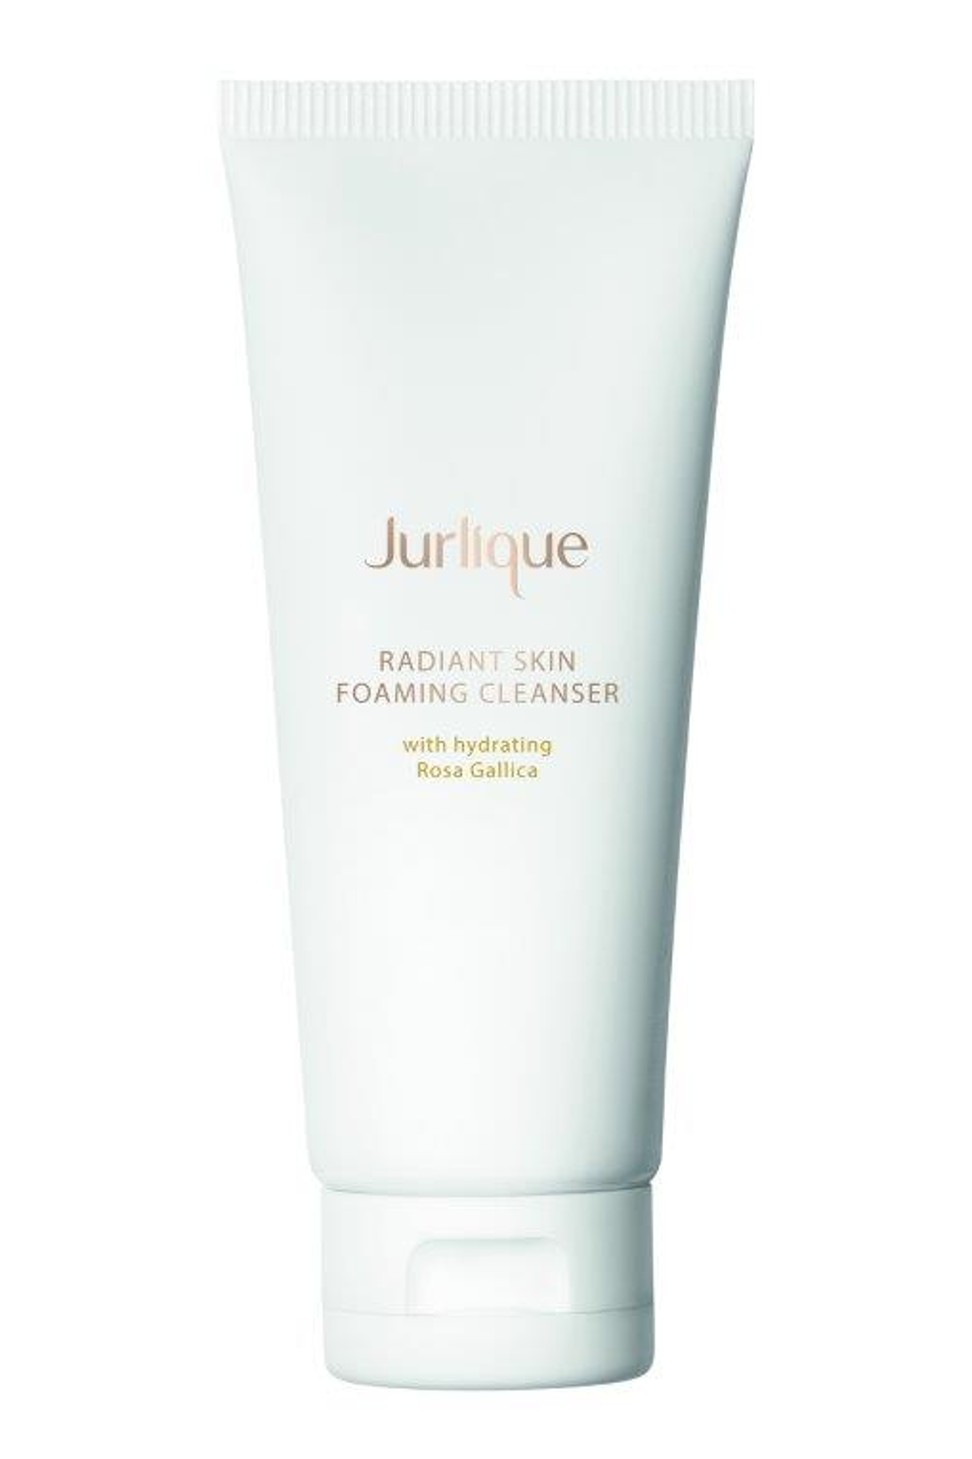 Jurlique Radiant Skin Foaming Cleanser.